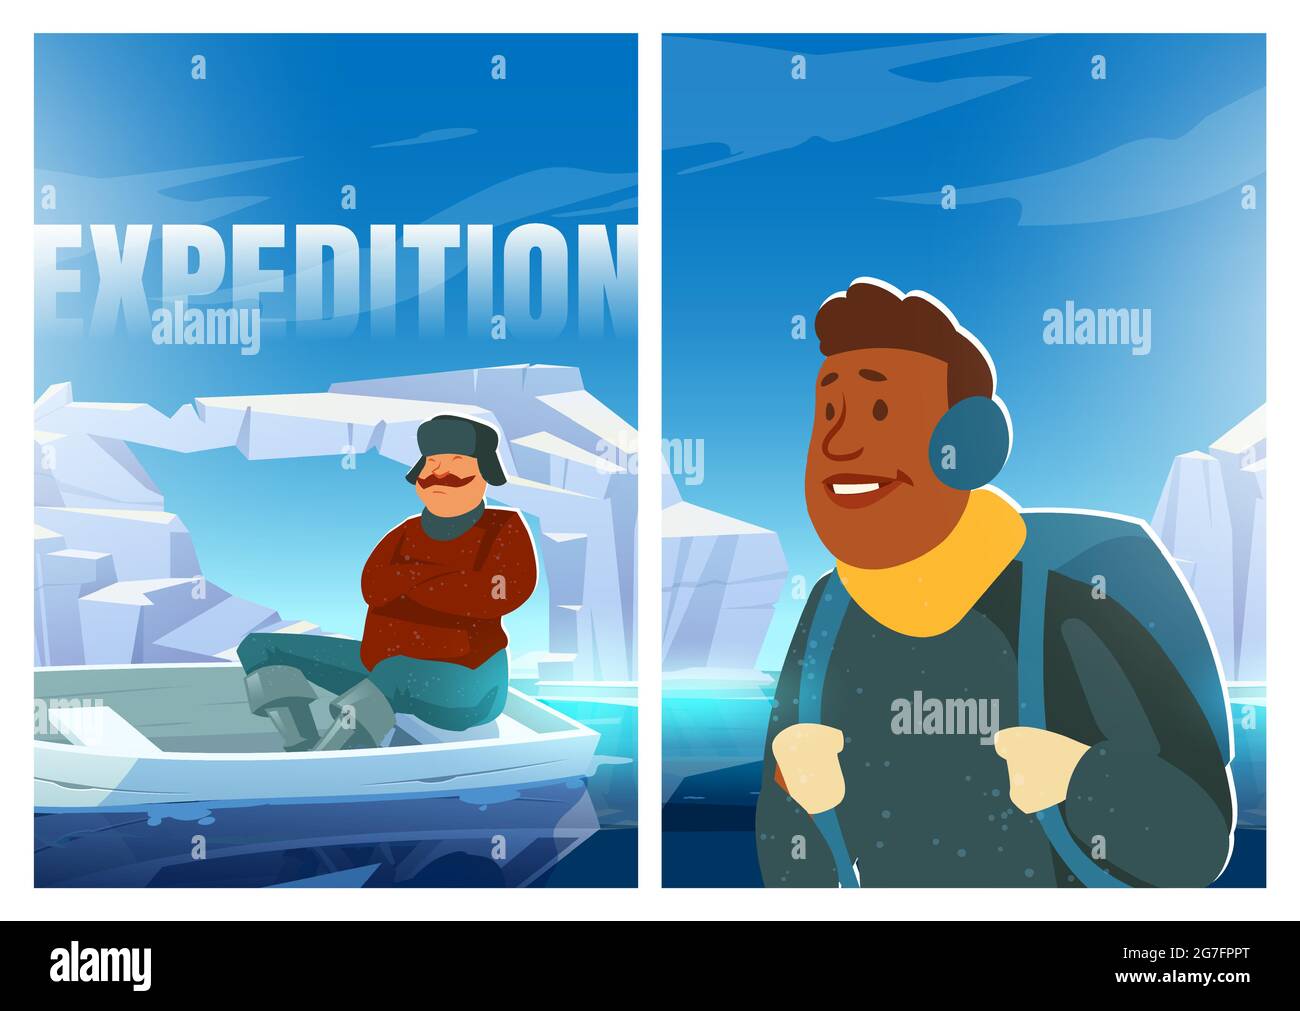 Poster della spedizione con persone sul ghiacciaio in artico. Concetto di ricerca scientifica sul polo nord o sull'Antartide. Vettore cartoon illustrazione di uomini con barca su ghiaccio polare in oceano Illustrazione Vettoriale